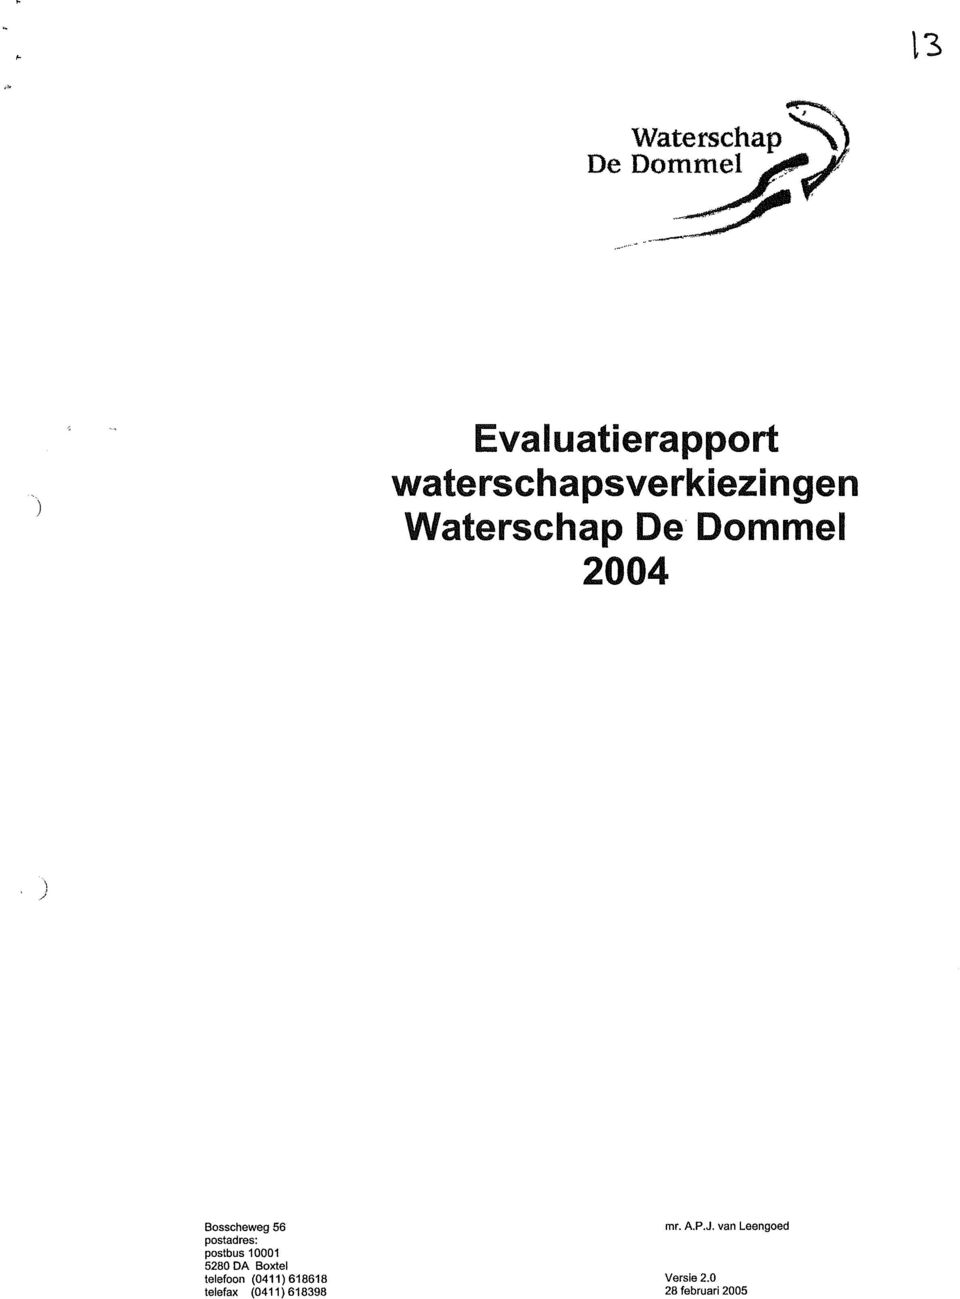 ..--- Evaluatierapport waterschapsverkiezingen Waterschap De Dommel 2004